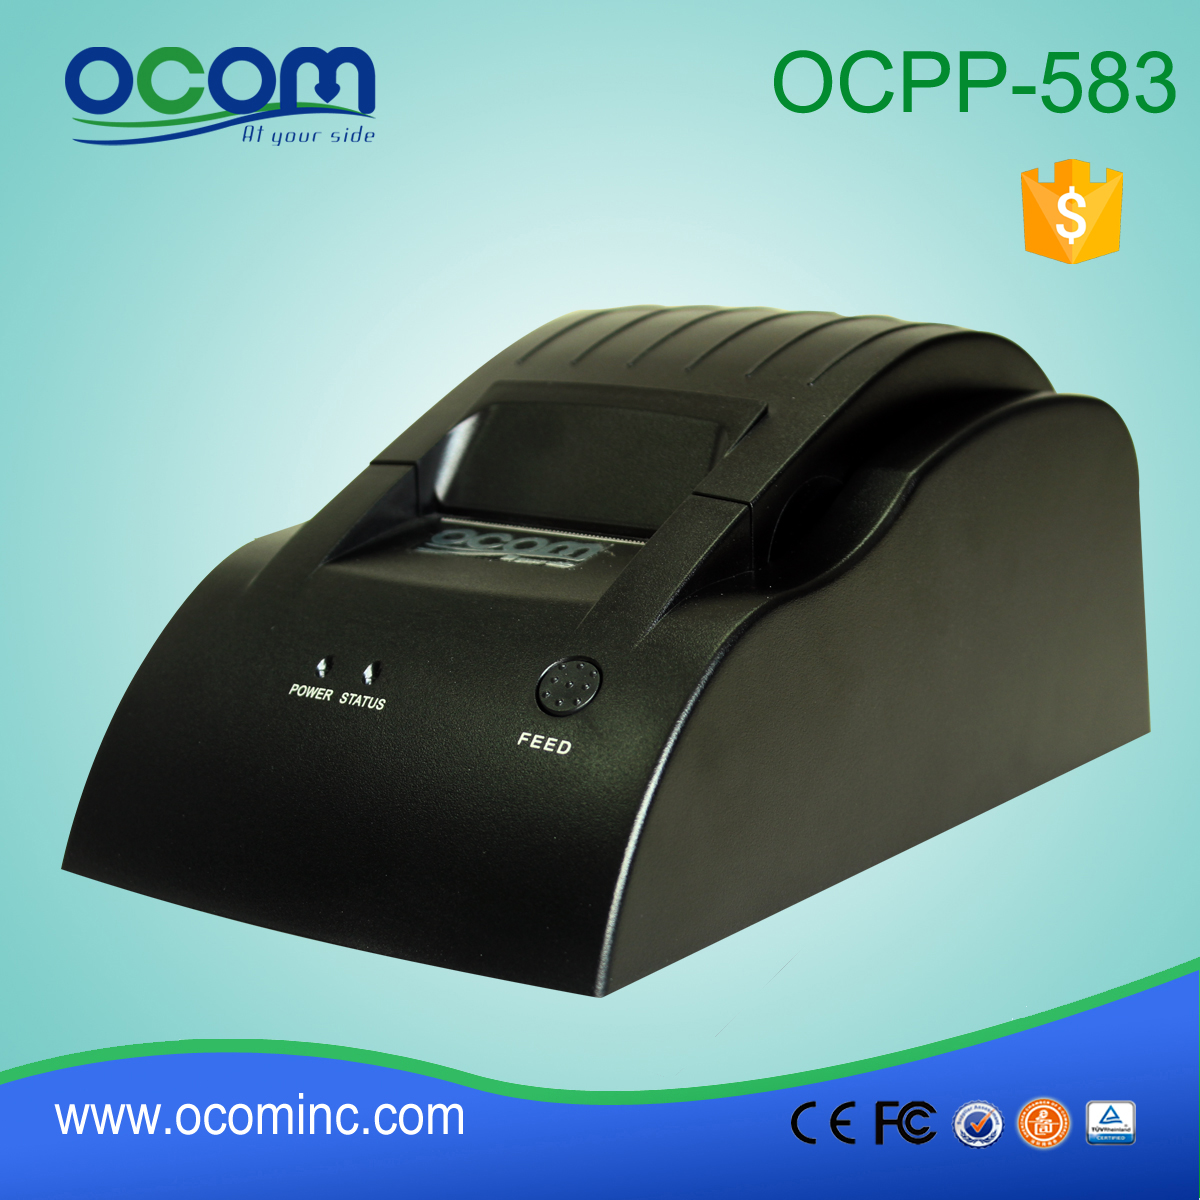 OCPP-583-P 58mm POS热敏票据打印机36p并行端口